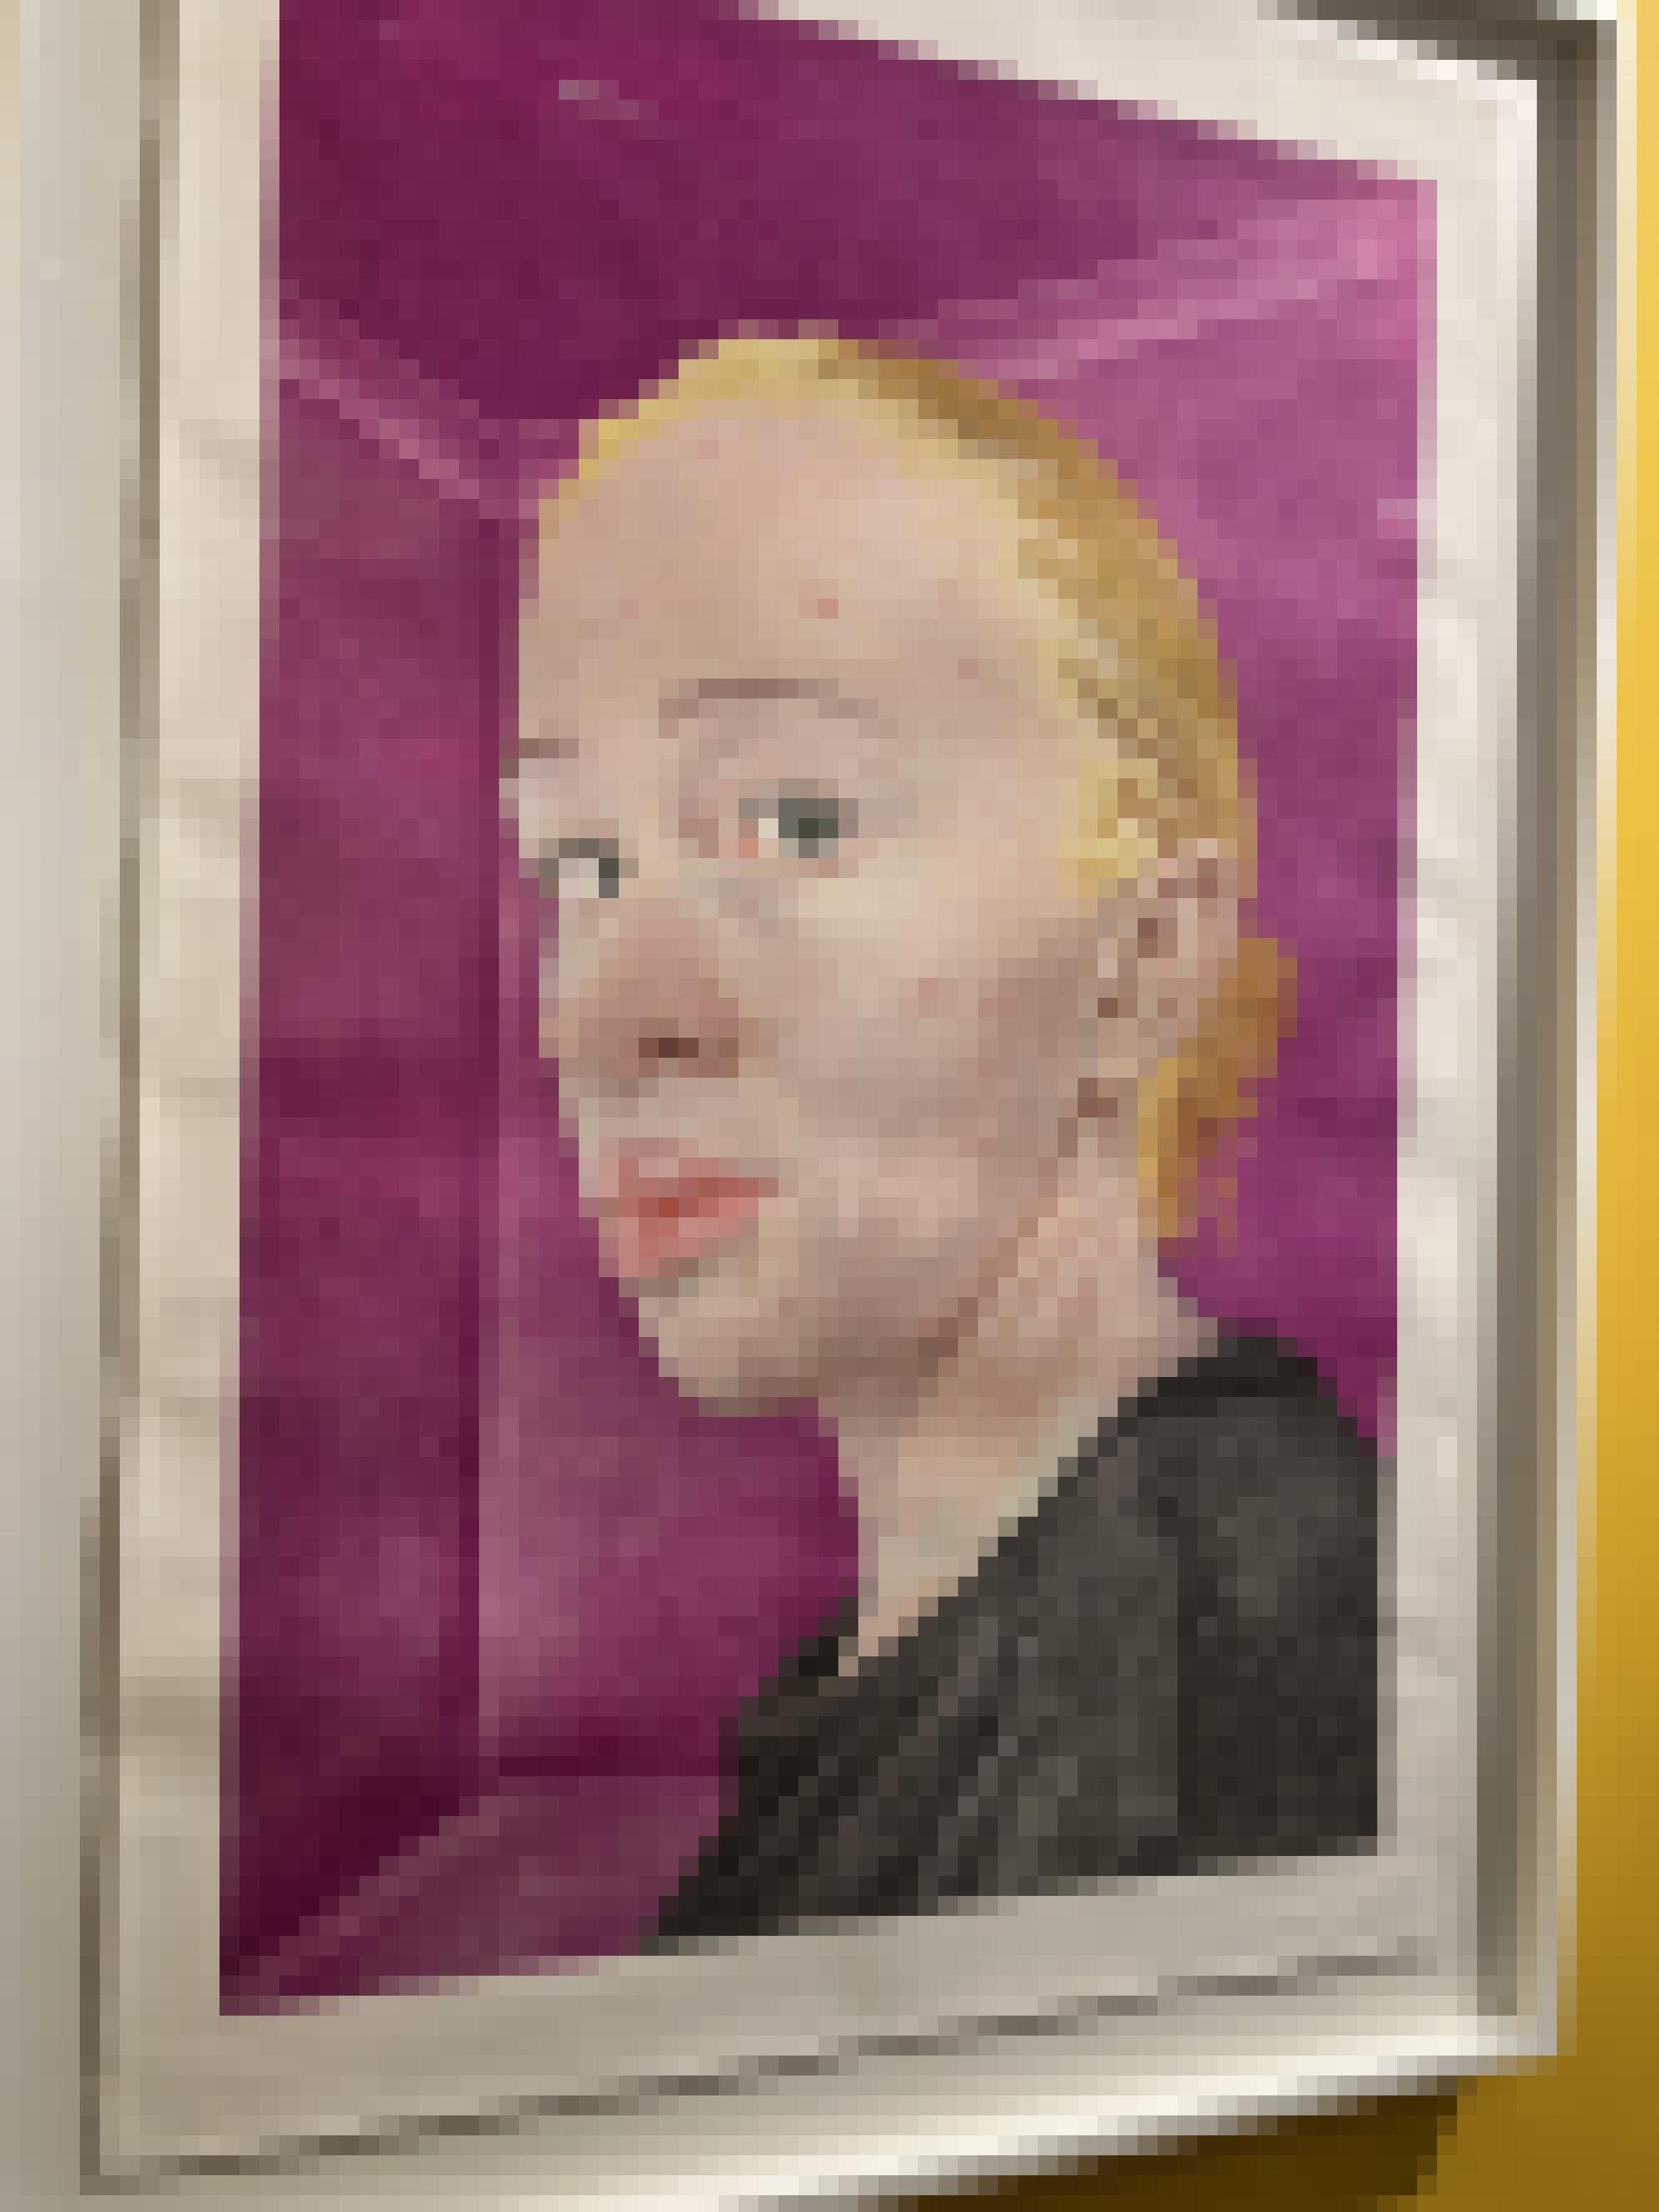 Ein Selbstporträt der Künstlerin, sie ist Albino.